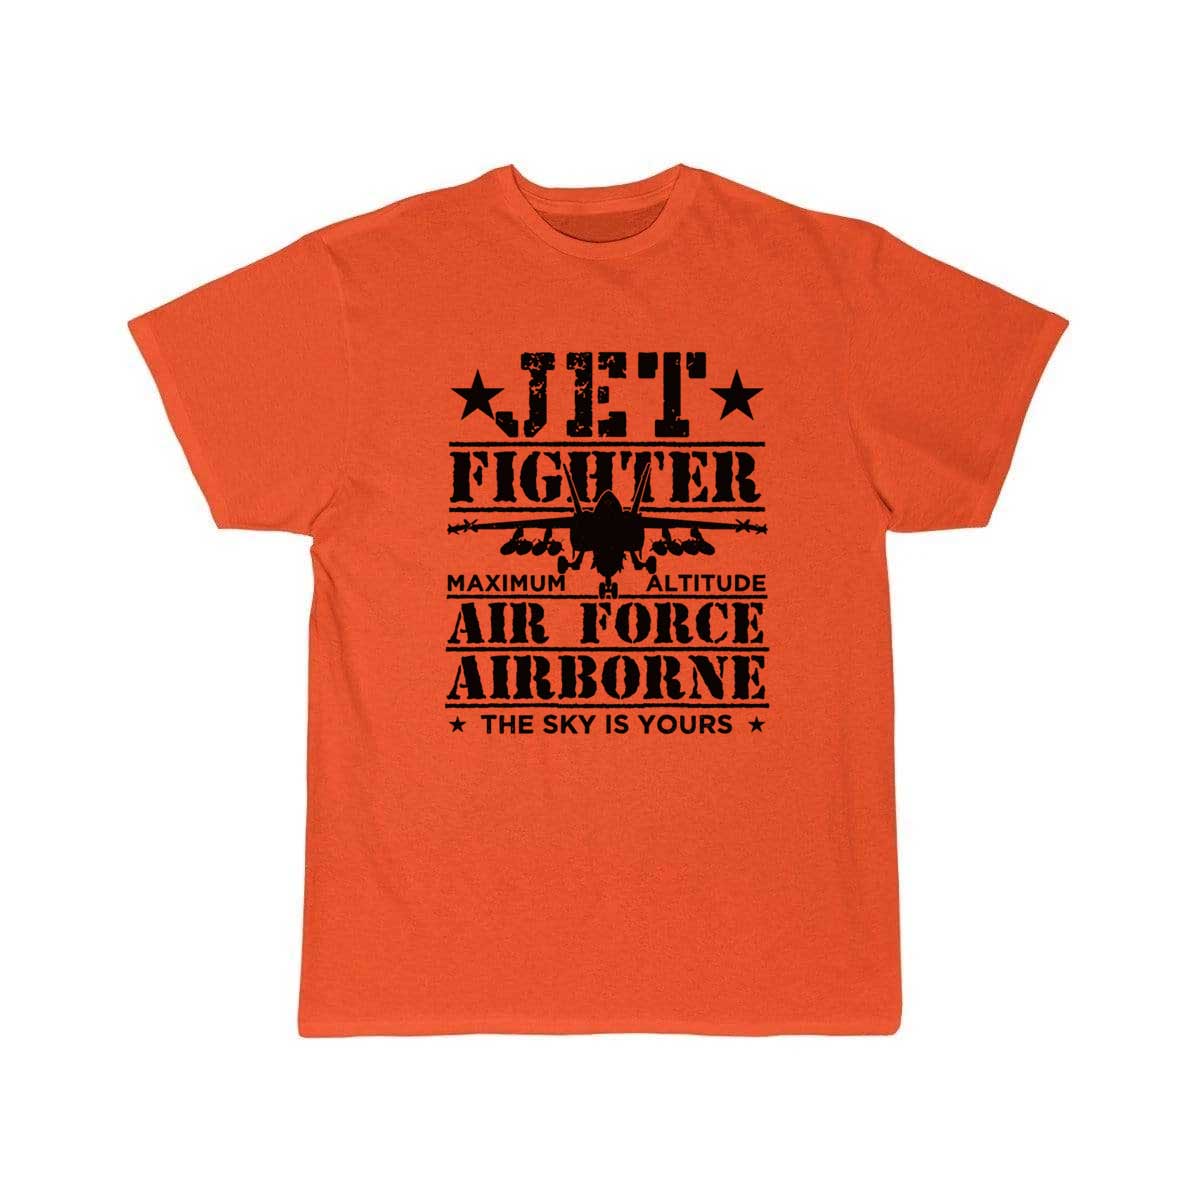 Jet Fighter Pilot Air Force Aircraft T Shirt THE AV8R